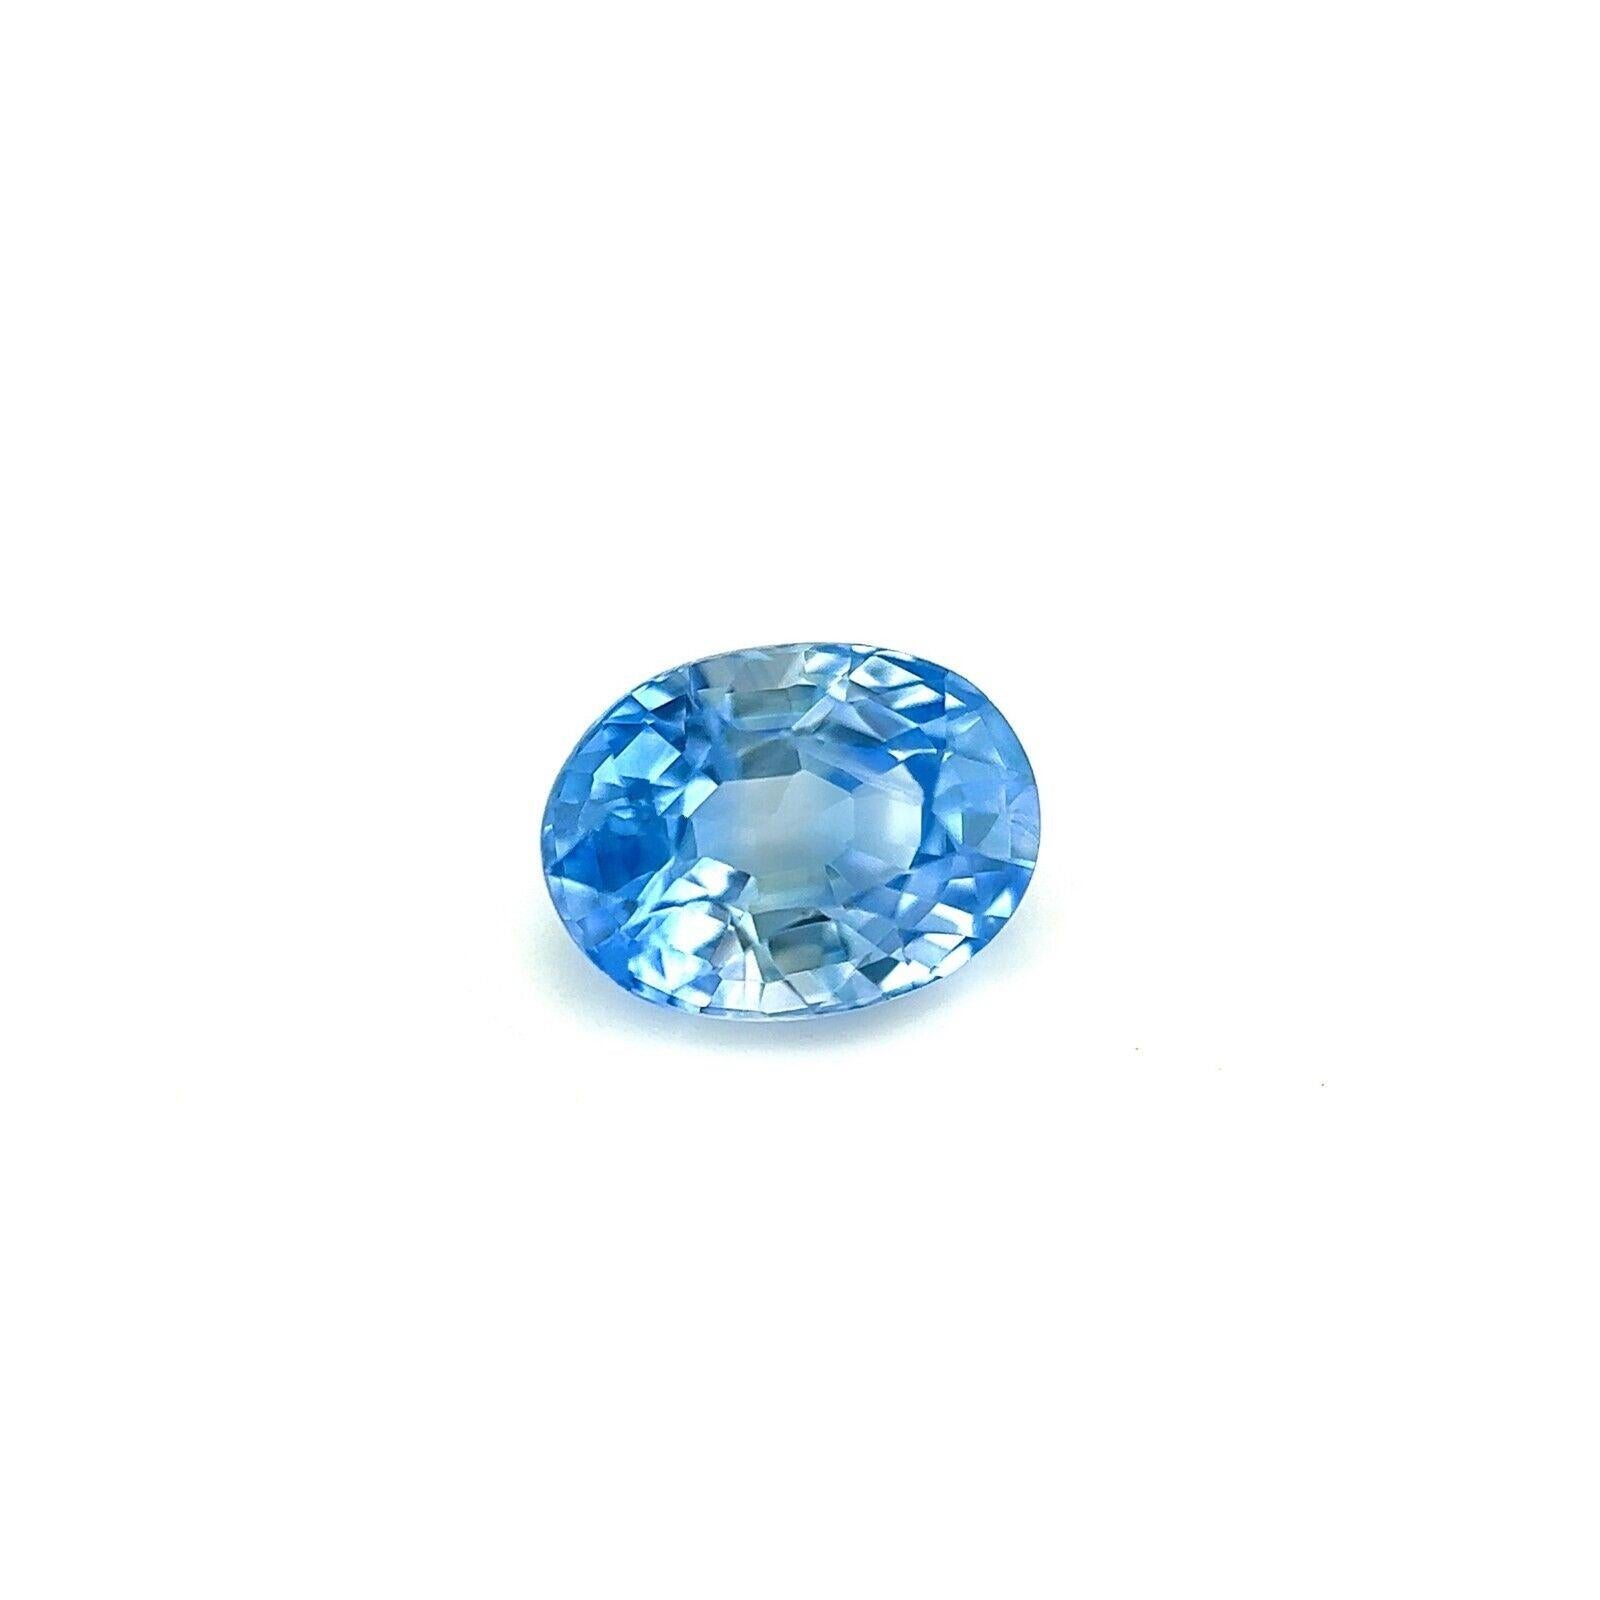 Saphir de Ceylan bleu clair taille ovale non serti naturel de 1,12 carat VS
 
 Saphir naturel bleu clair de Ceylan, taille ovale.
 
 Saphir de 1,12 carat d'une belle couleur bleu clair. 
 Ce saphir a une excellente clarté, c'est une pierre très